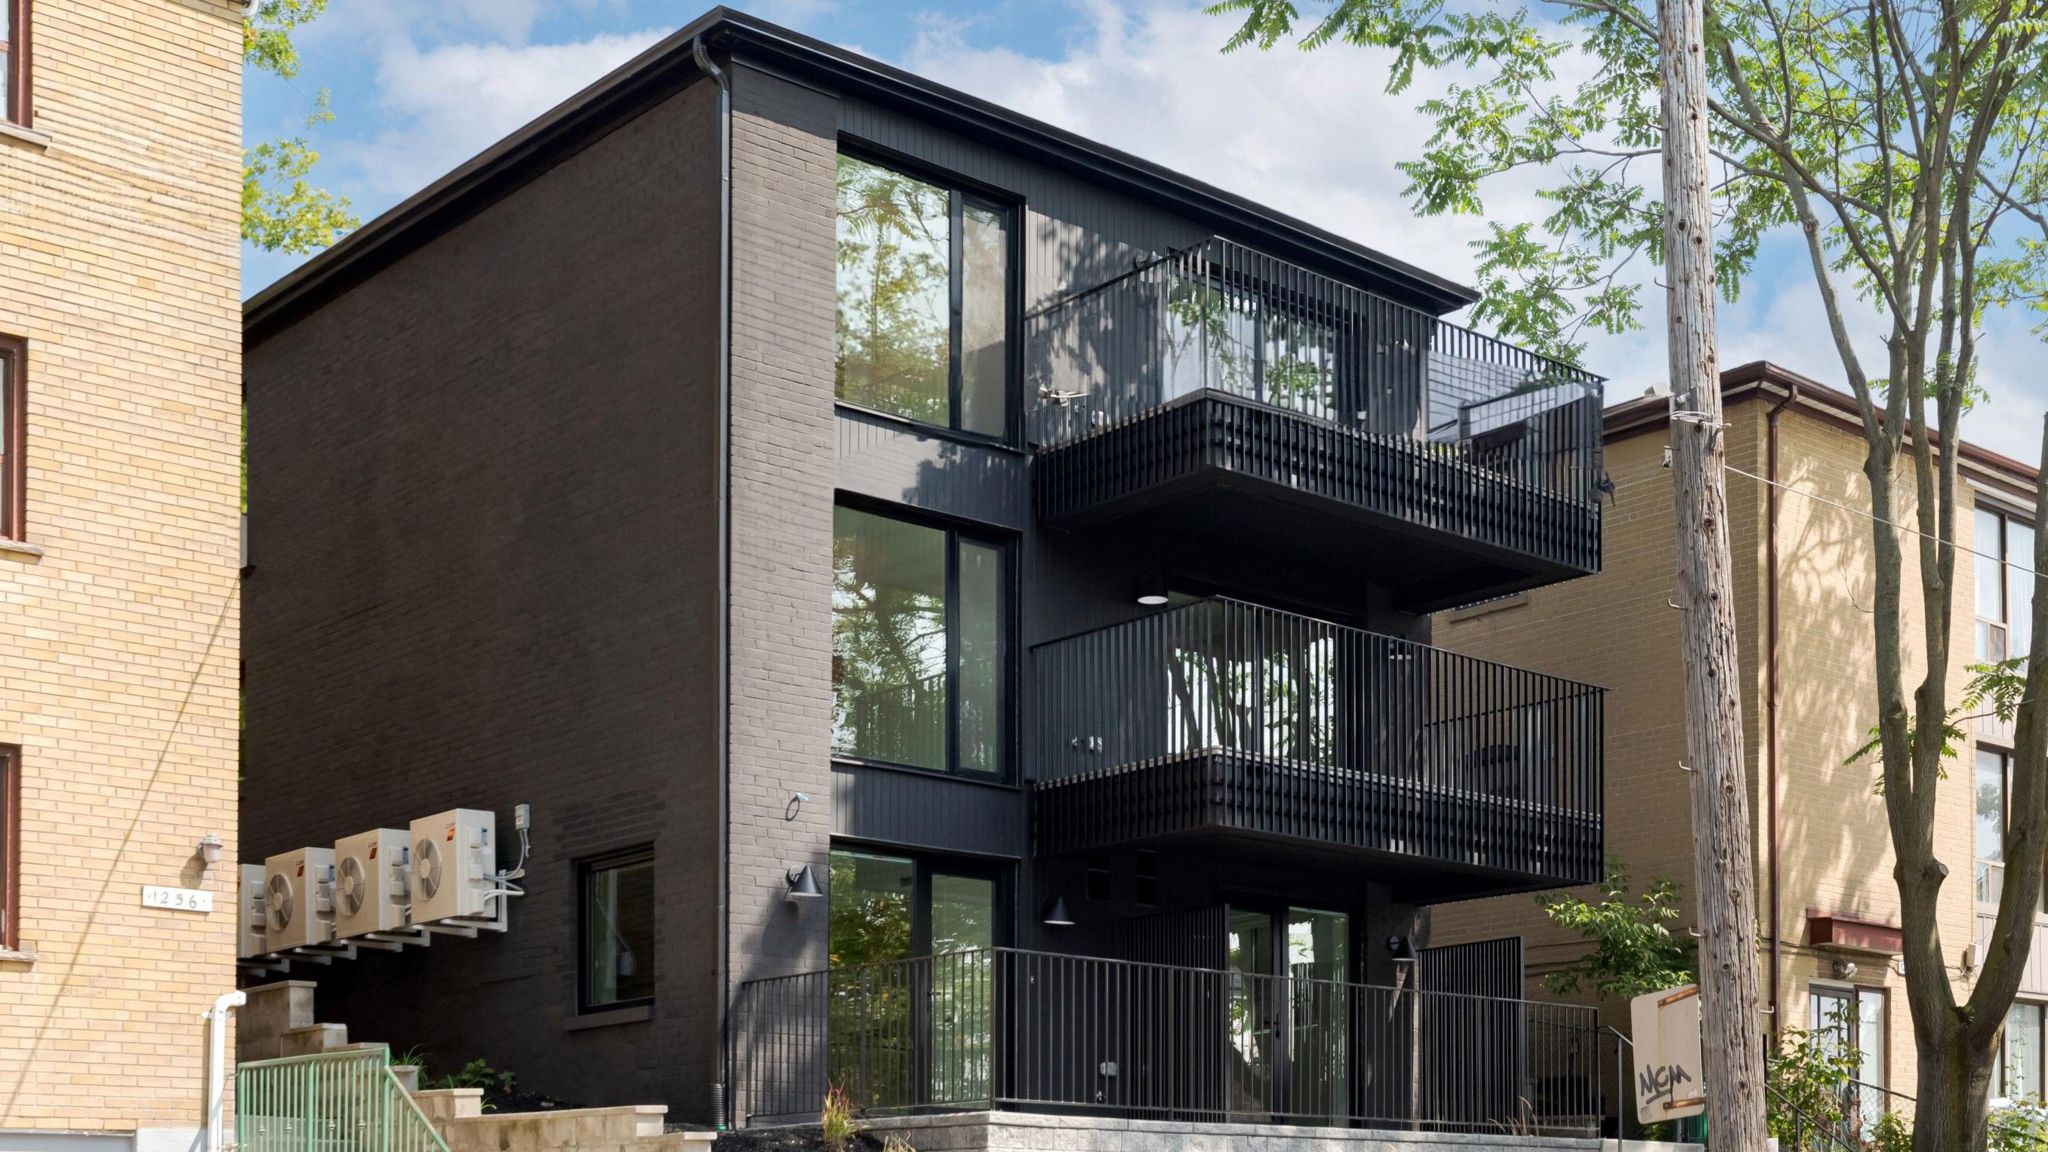 A new-build fourplex in Toronto